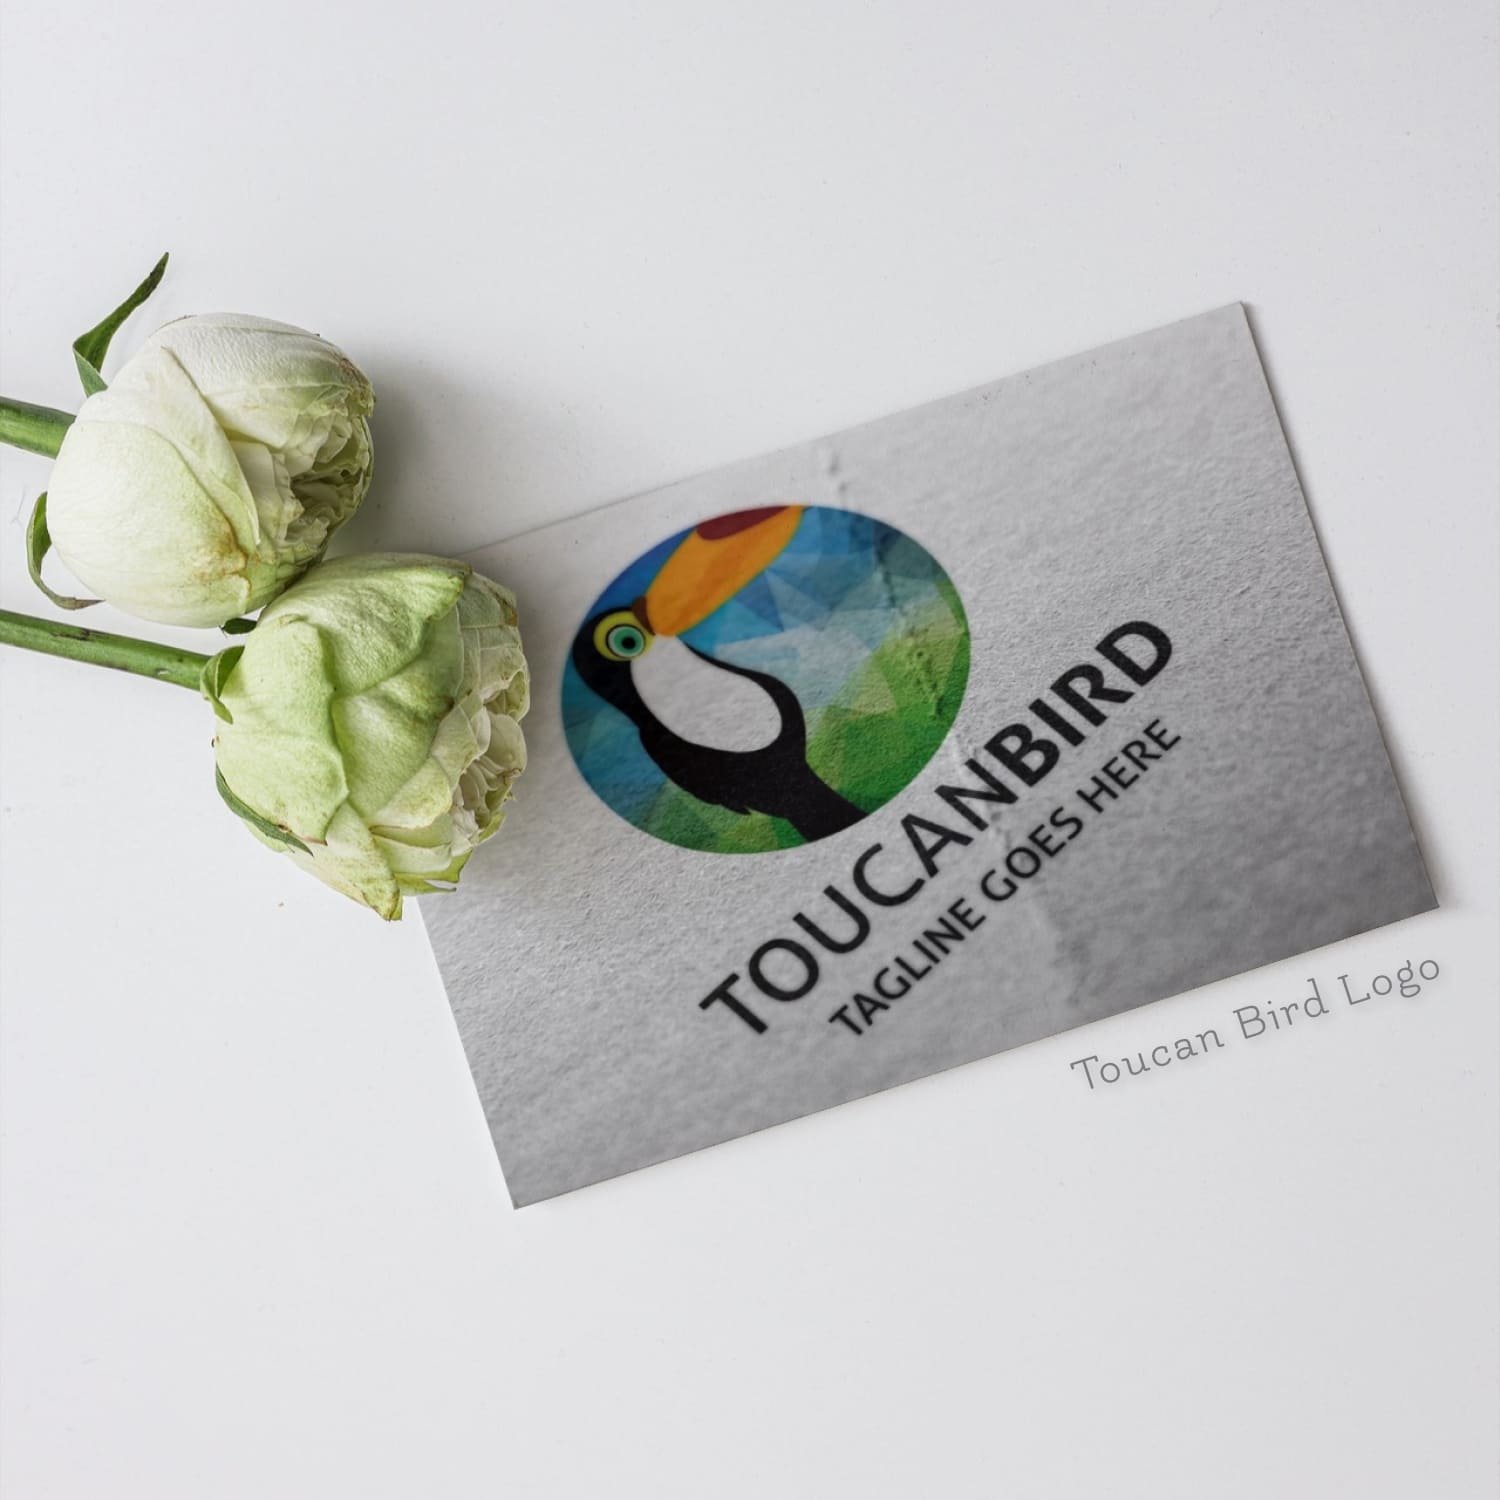 Toucan Bird Logo Design cover image.